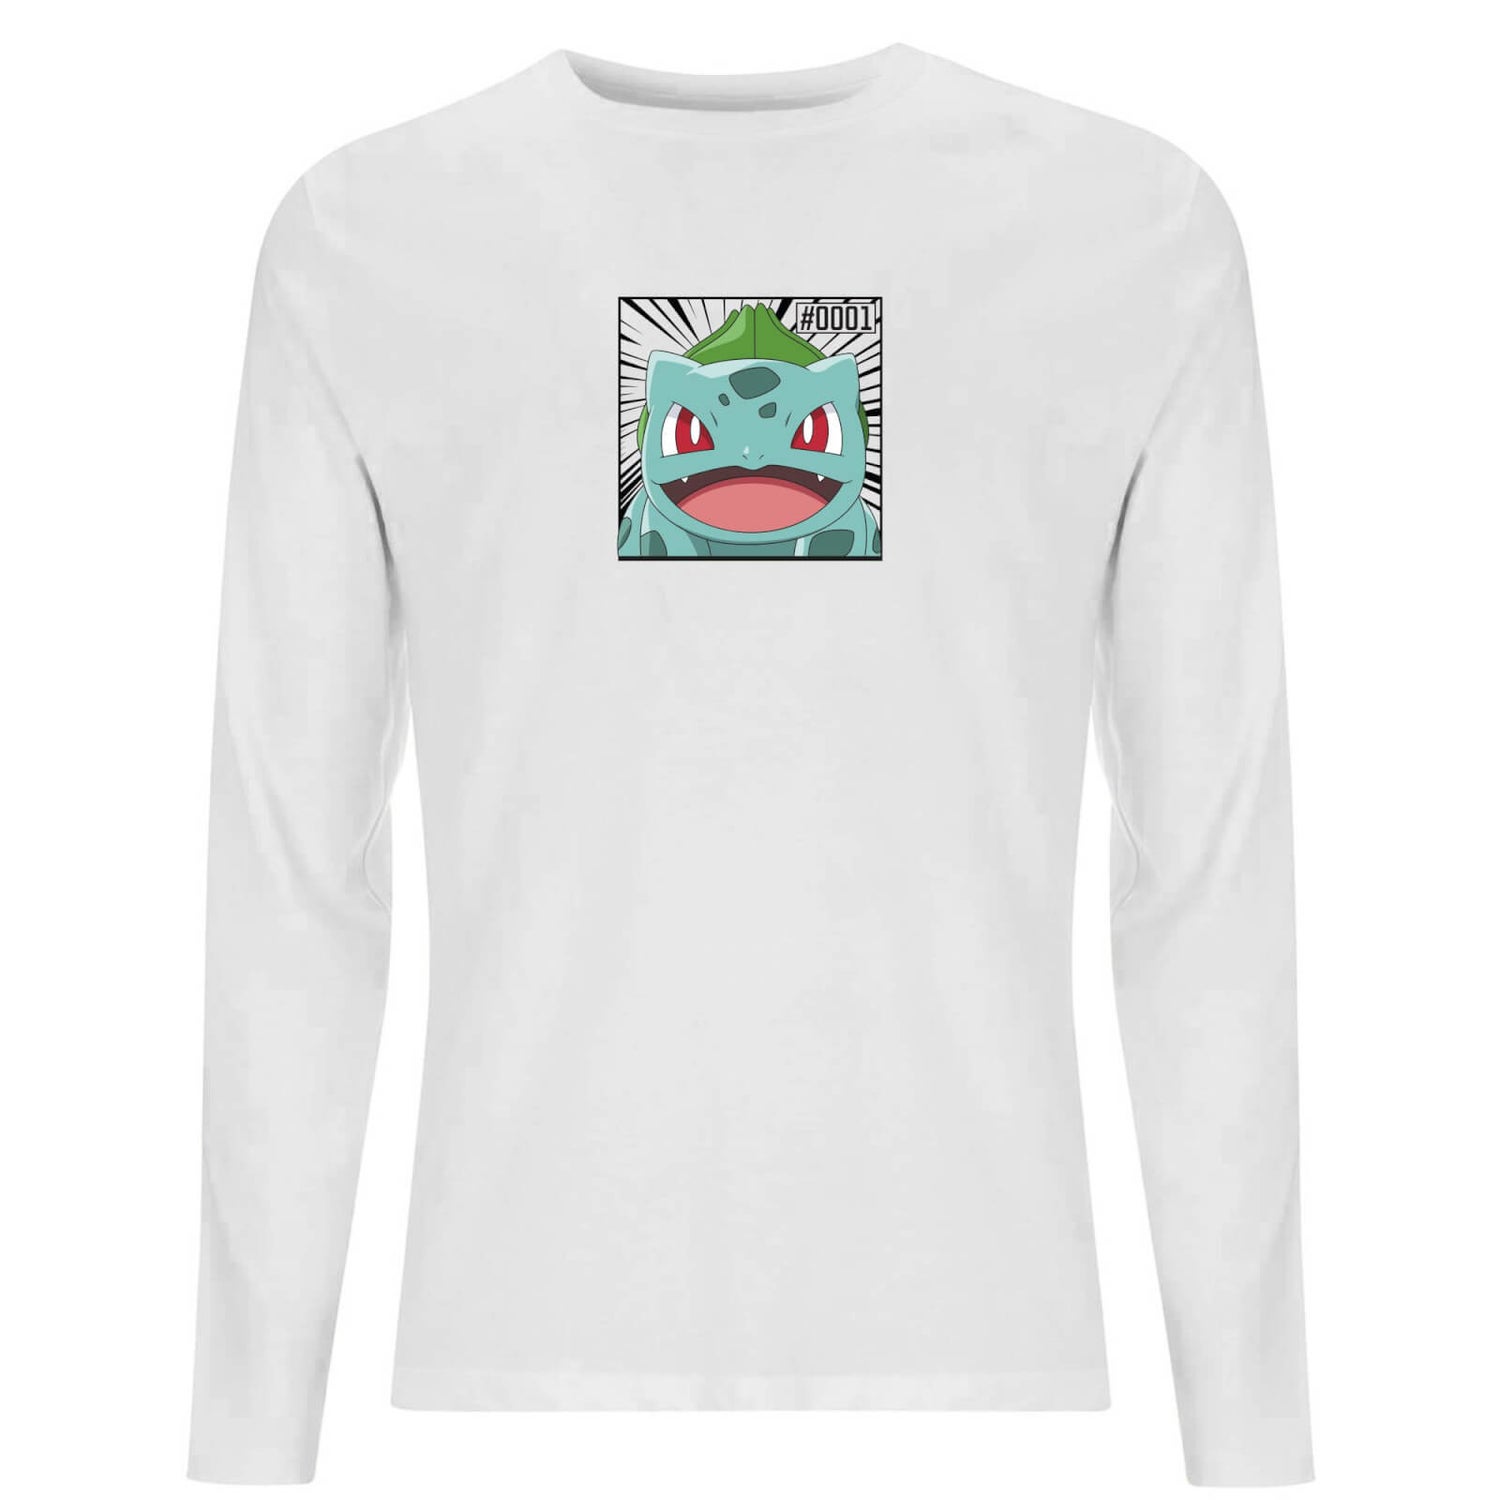 Pokémon Pokédex Bisasam #0001 Langärmeliges T-Shirt - Weiß